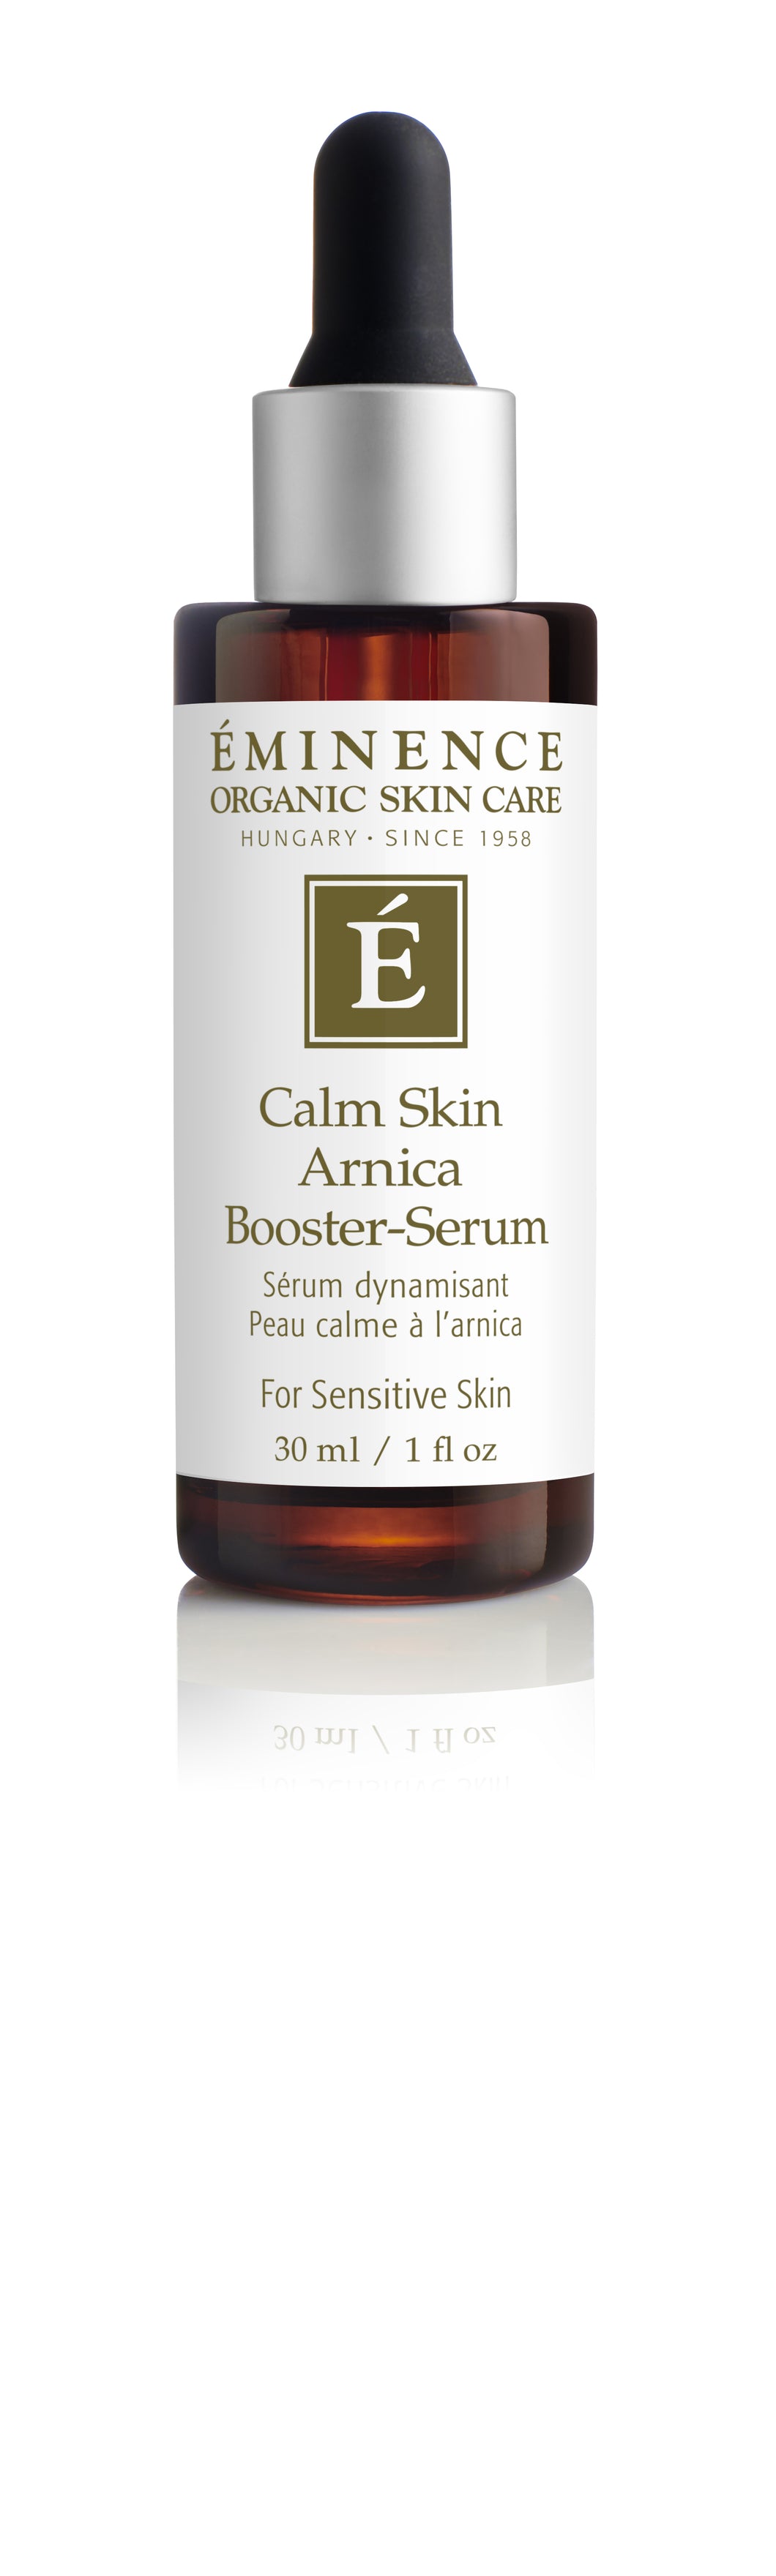 Calm Skin Arnica Booster-Serum